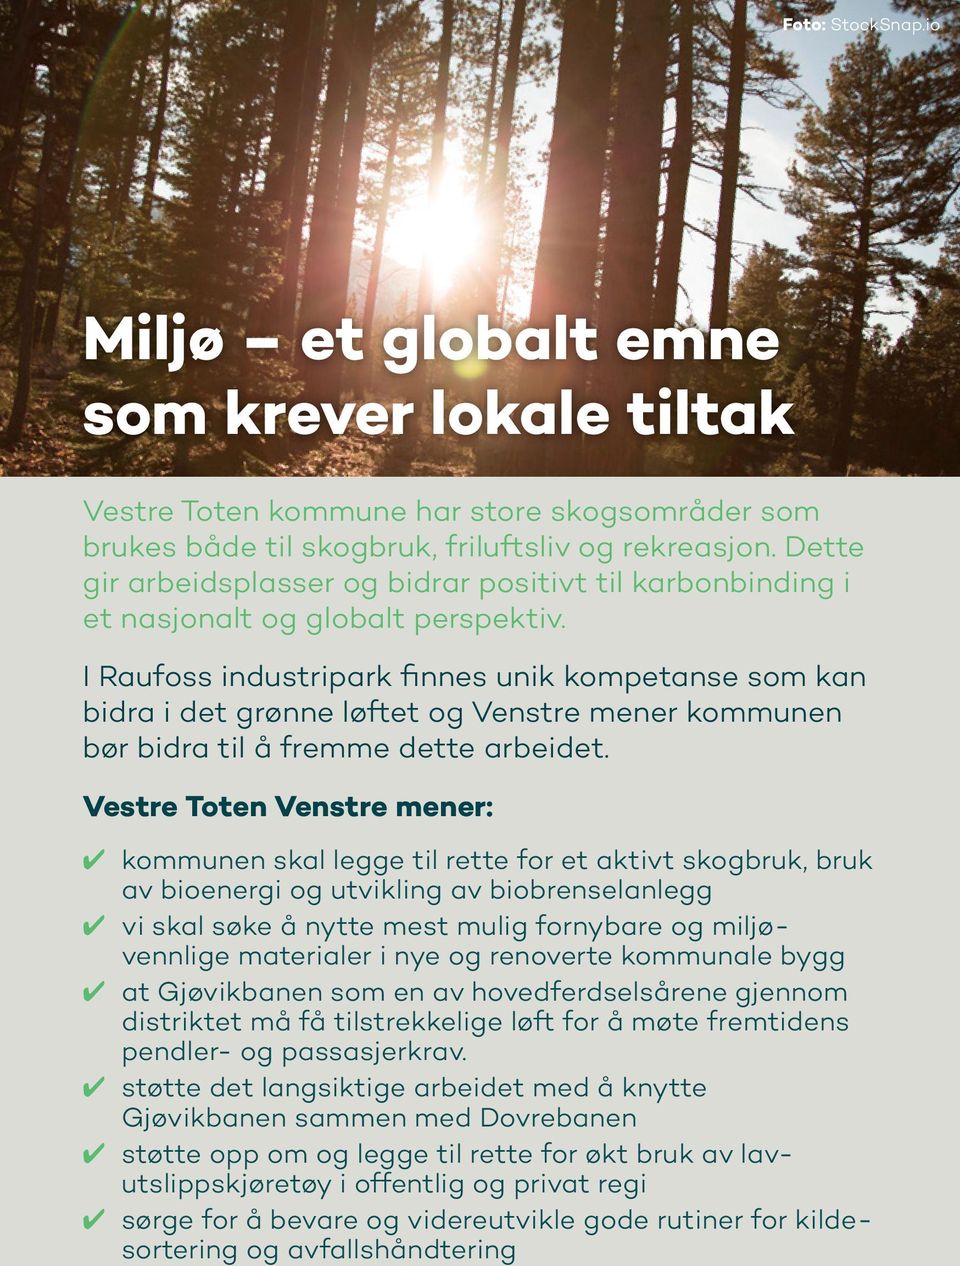 I Raufoss industripark finnes unik kompetanse som kan bidra i det grønne løftet og Venstre mener kommunen bør bidra til å fremme dette arbeidet.